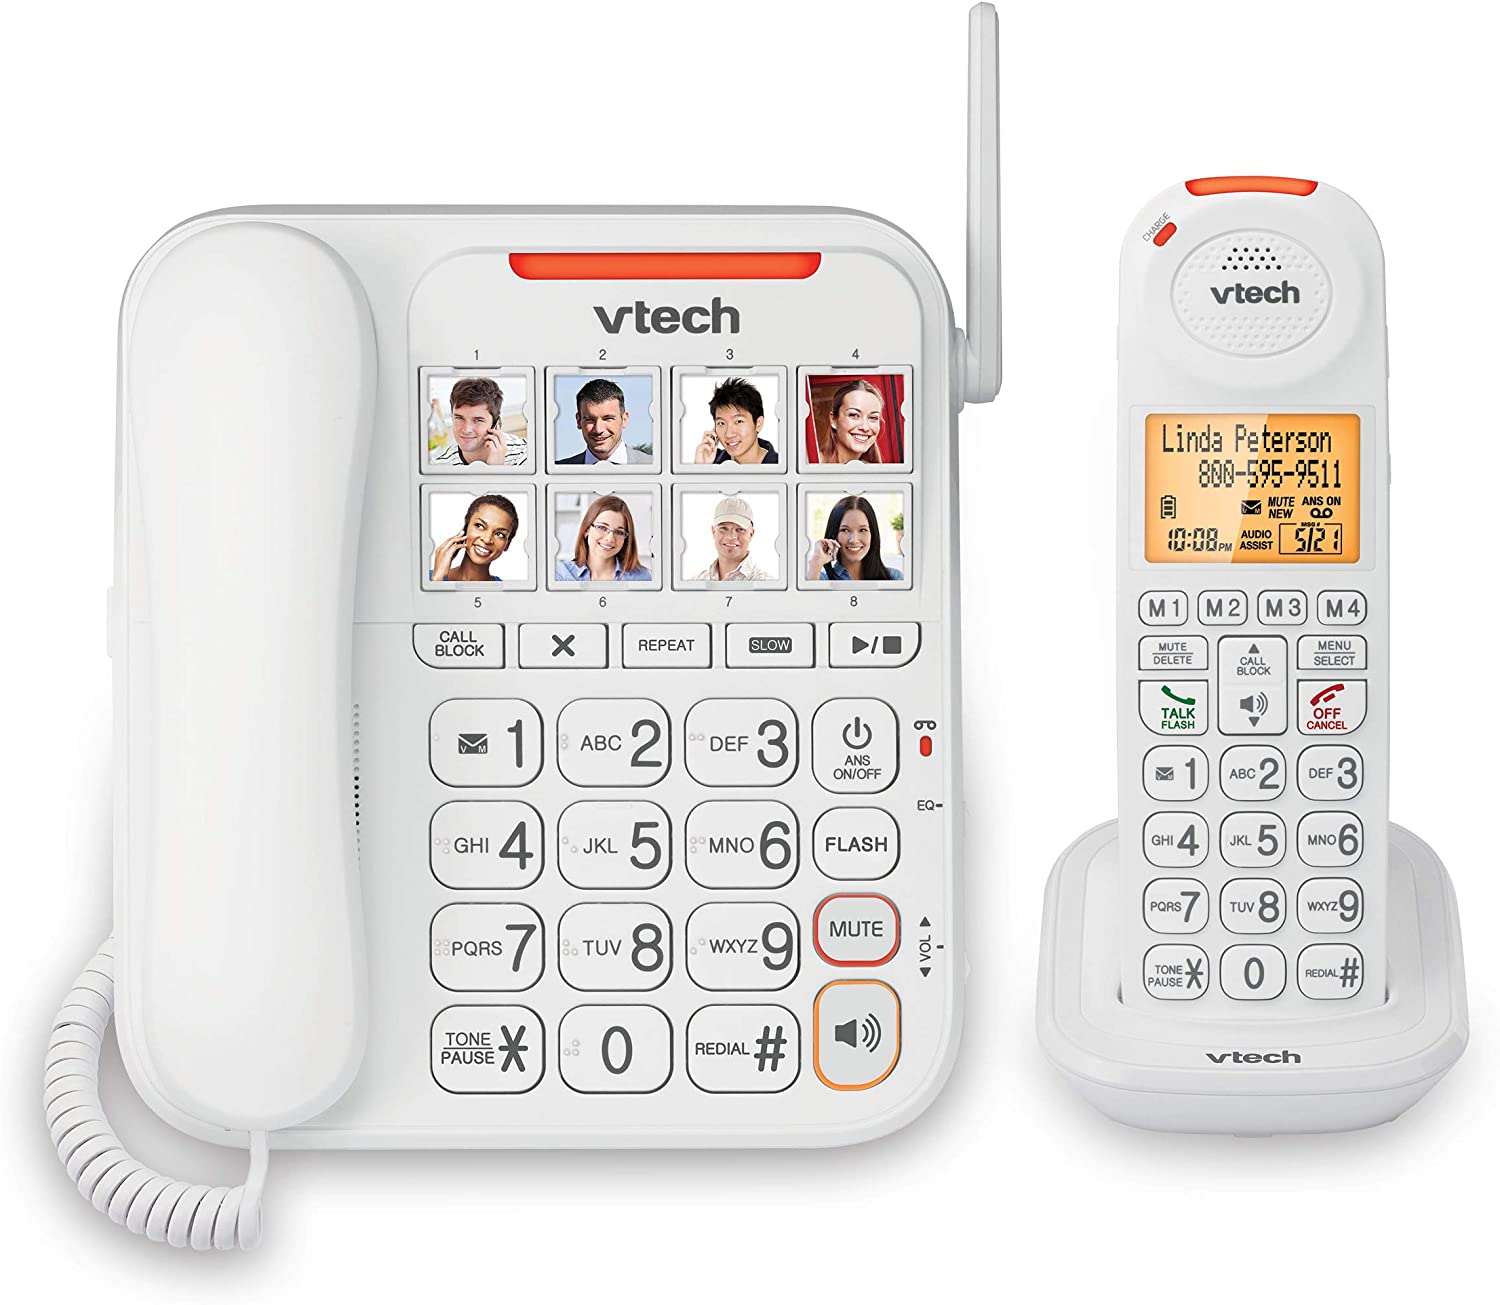 Vtech big button phone. 